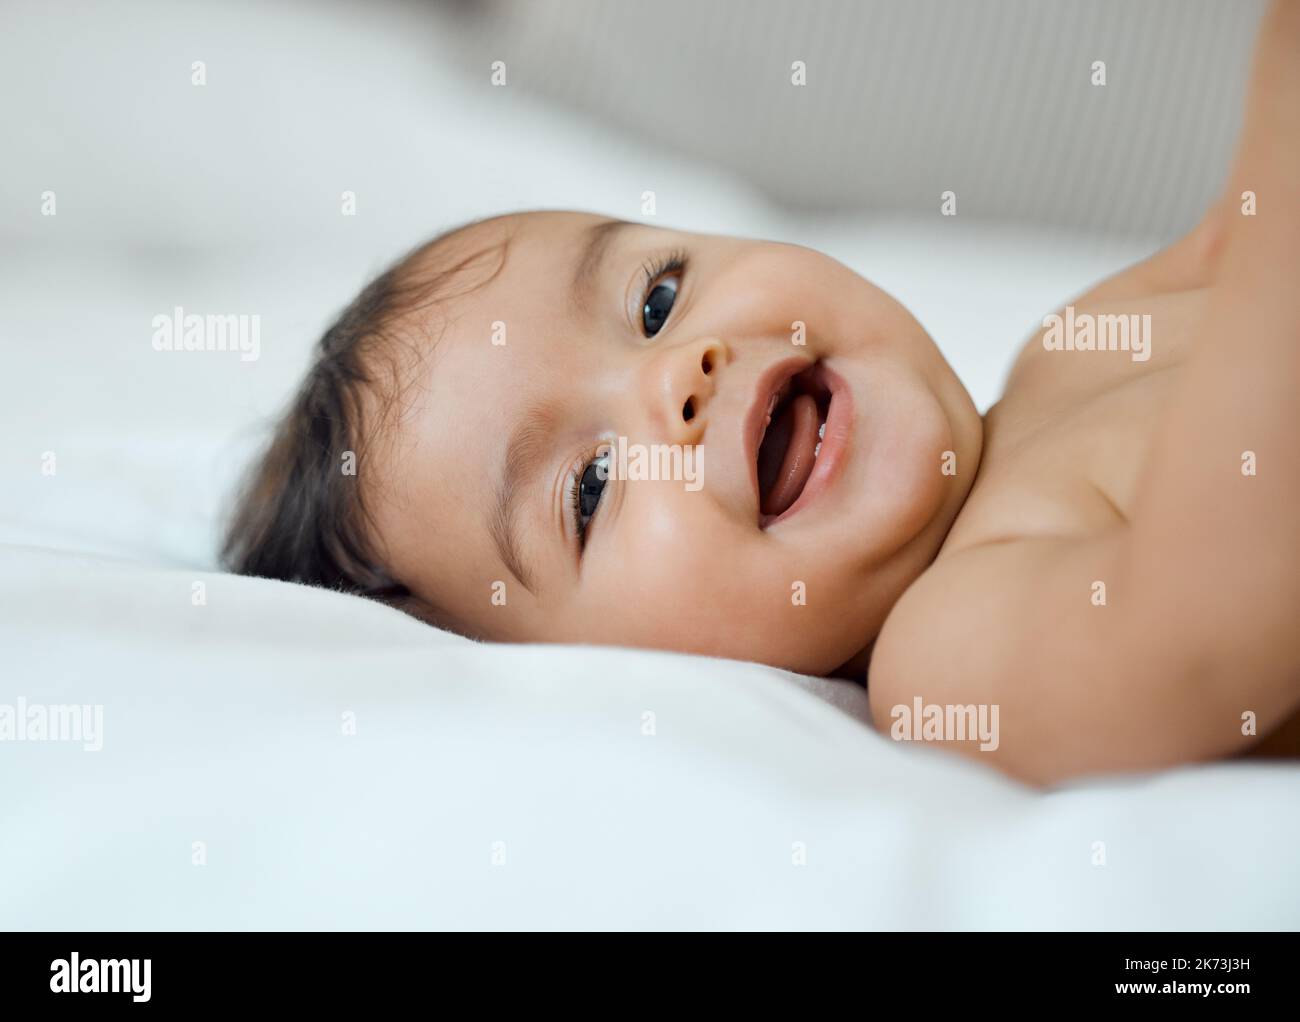 Le sue risate sono solo le più belle. Ritratto di una adorabile bambina sdraiata su un letto a casa. Foto Stock